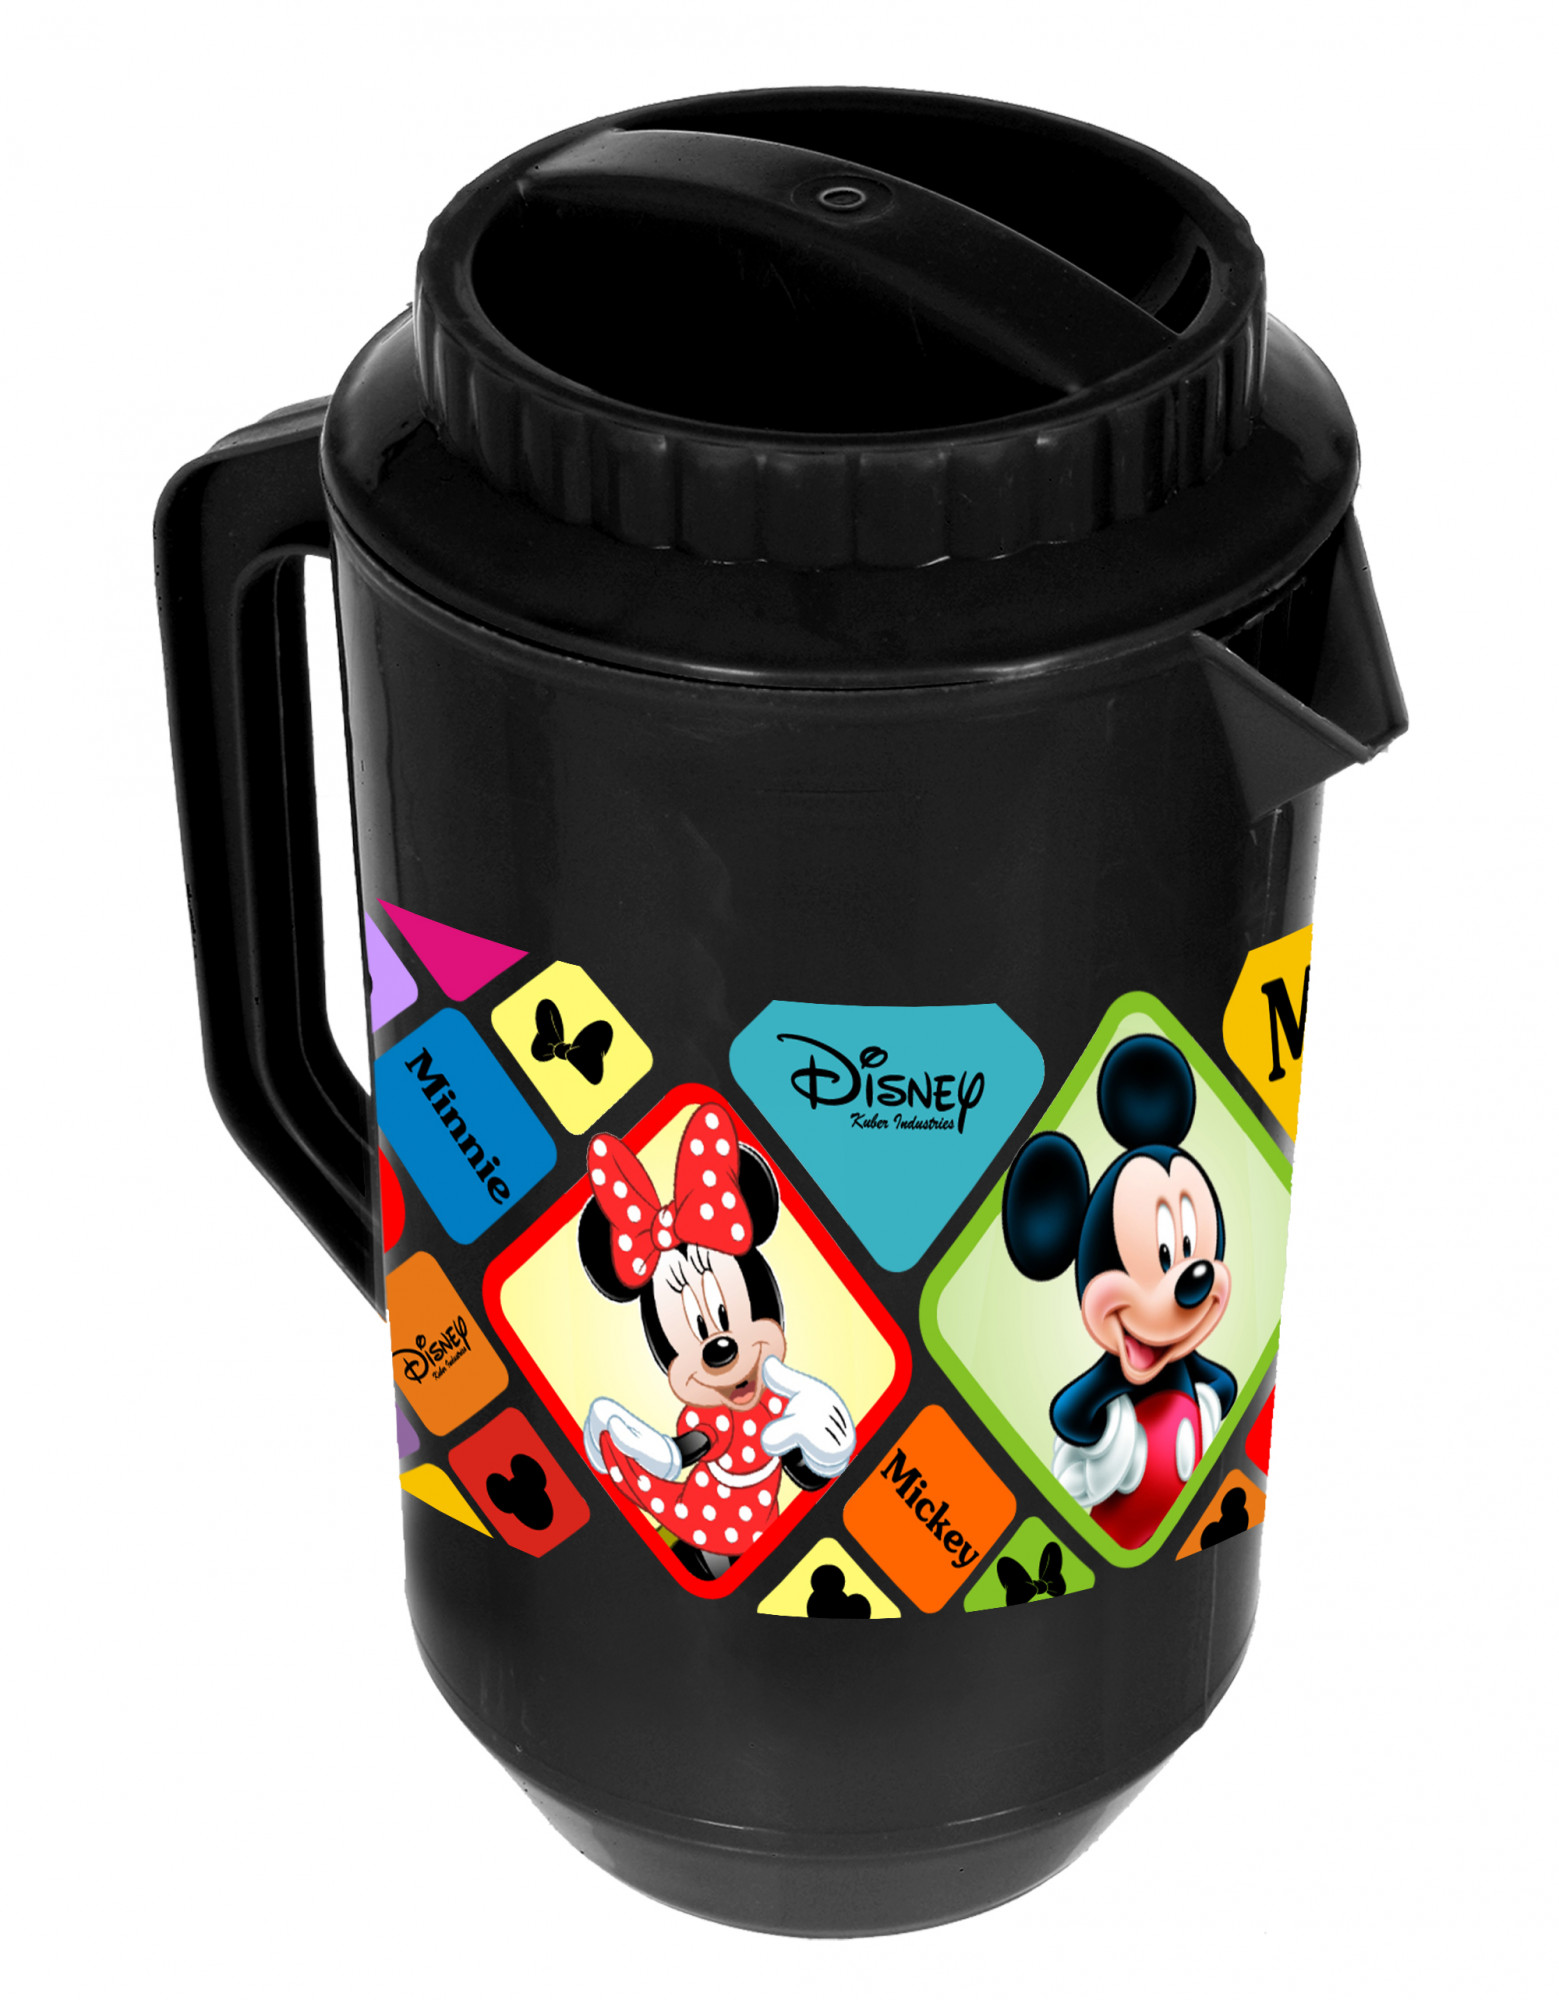 Kuber Industries Disney Mickey Minnie Print Unbreakable Multipurpose Plastic Water & Juice Jug With Lid,2 Ltr (Set Of 2, Black & White)